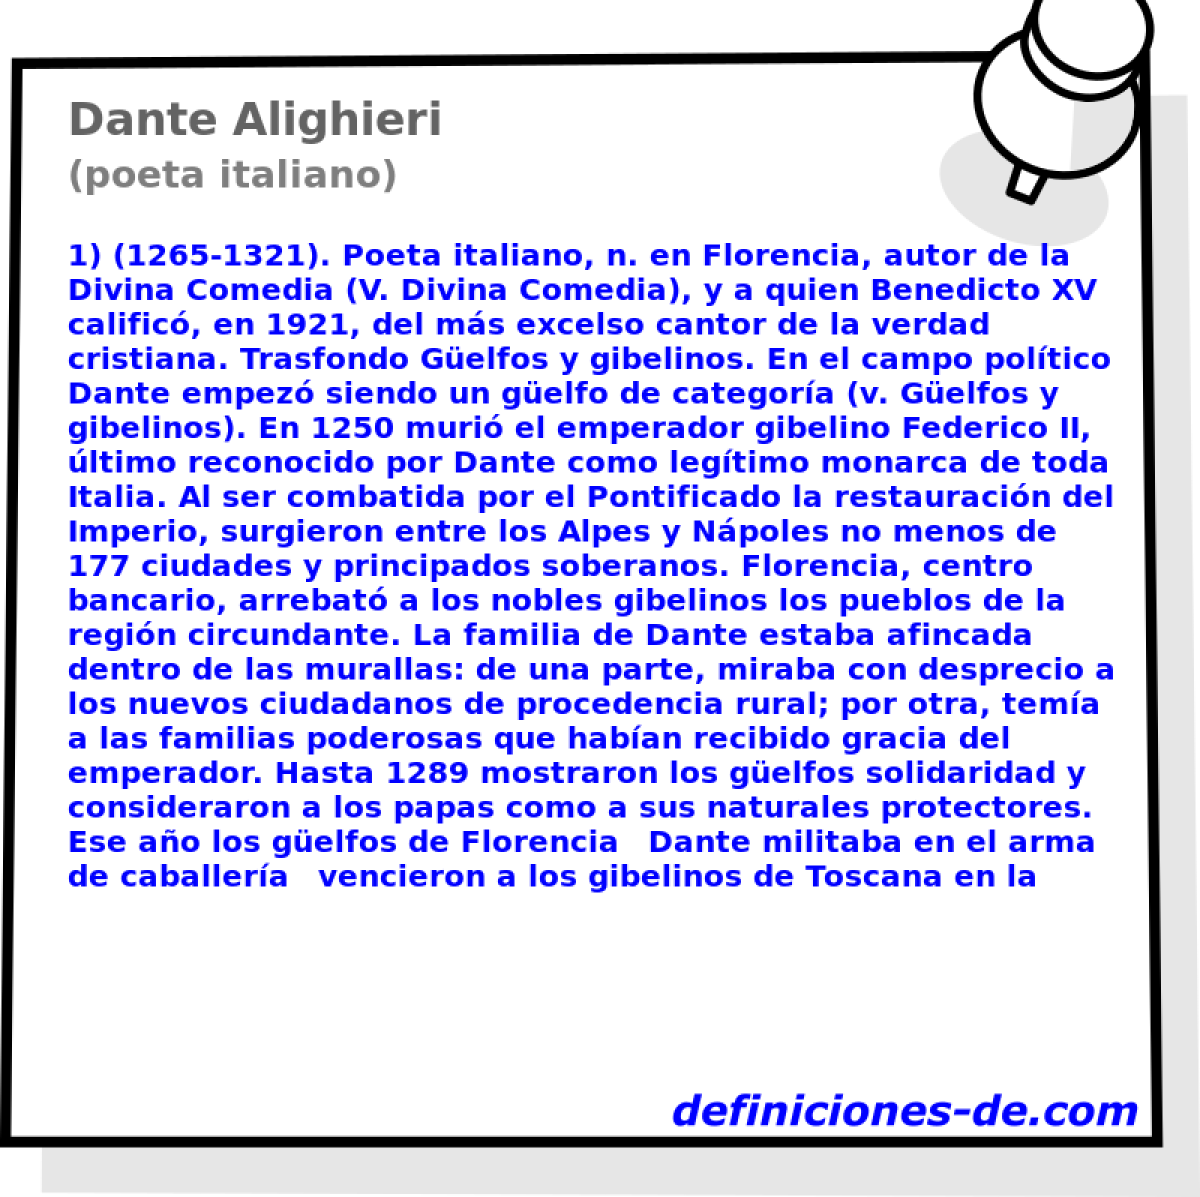 Dante Alighieri (poeta italiano)